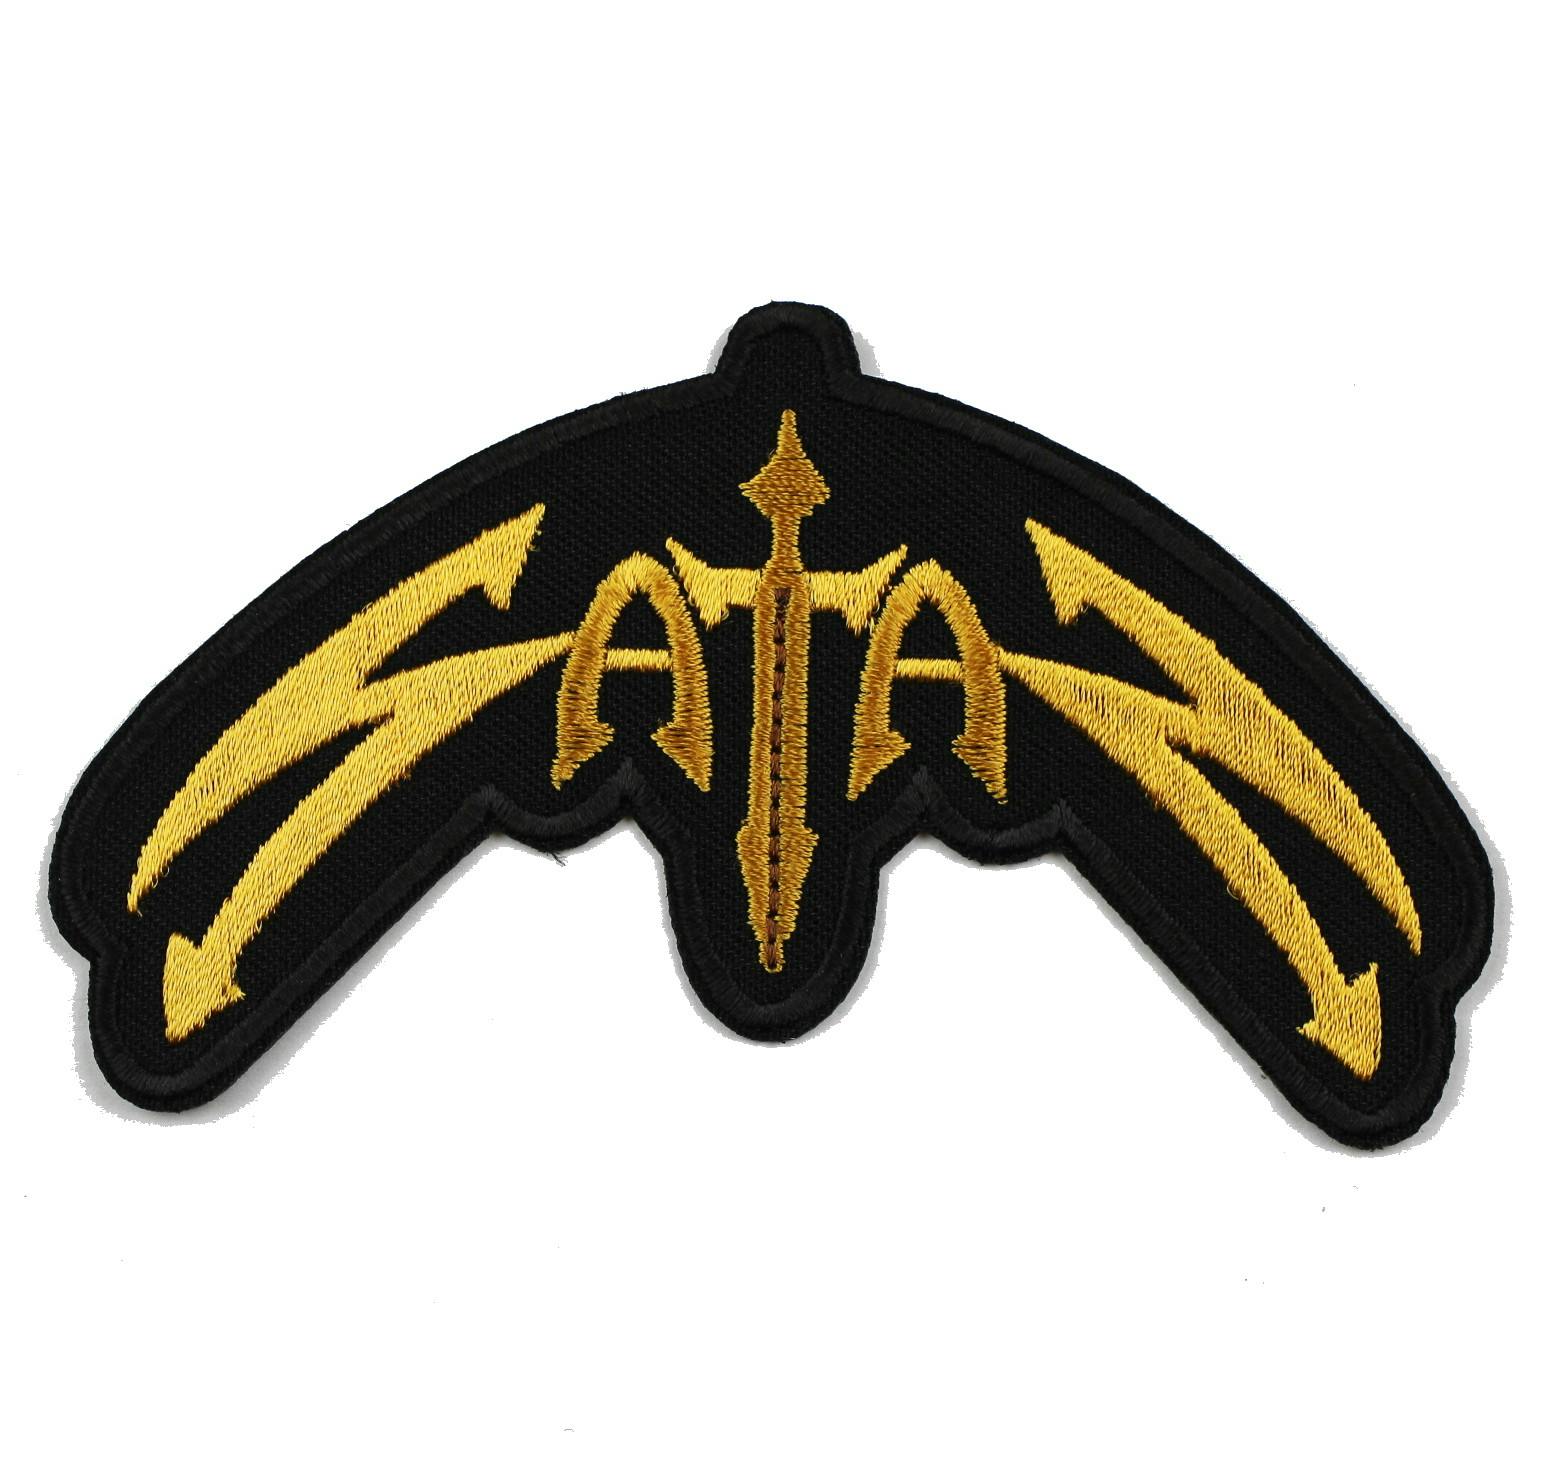 Satan logo patch